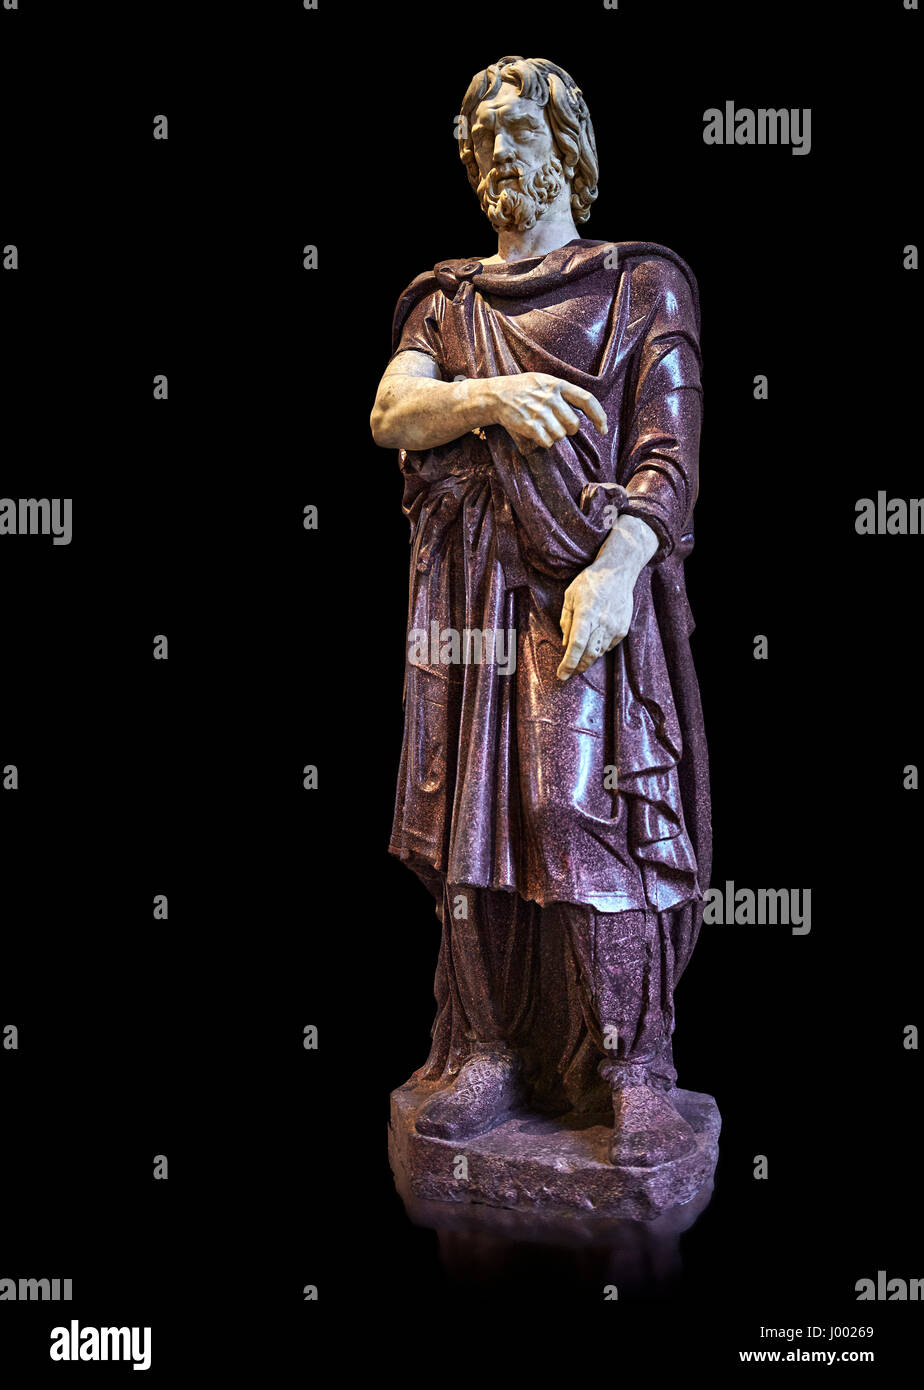 Statue eines Gefangenen Barbaren - 2. Jh. n. Chr. Römische Skulptur in Porphyr aus. Inv-Nr. Herr 331 oder Ma 1385, Louvre-Museum, Paris. Stockfoto